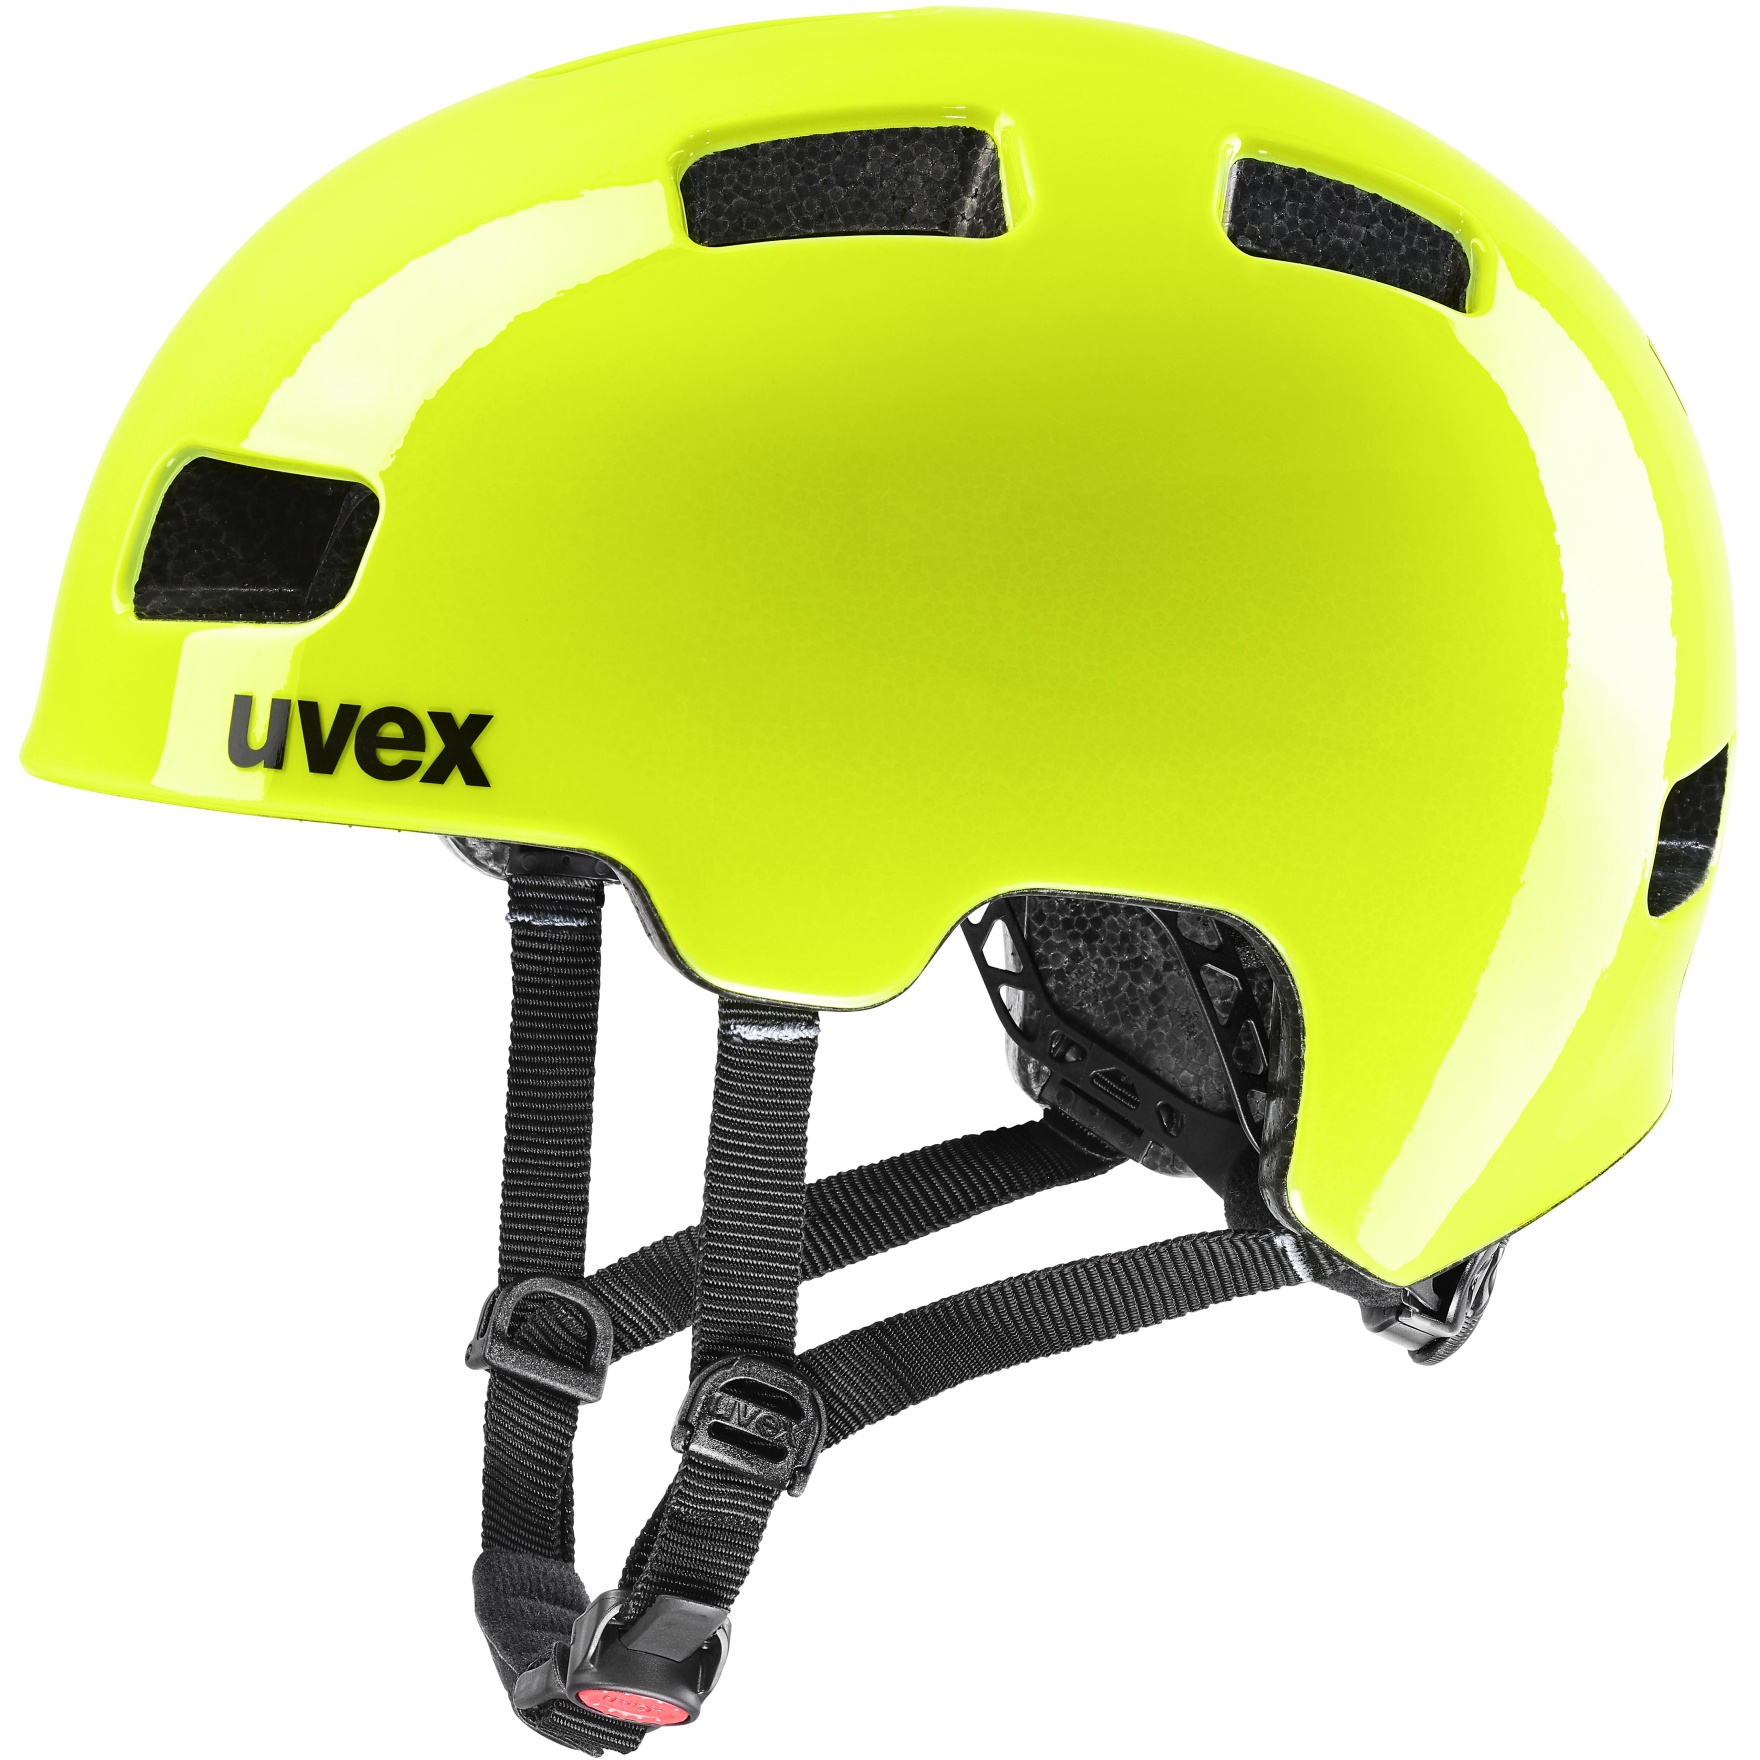 Picture of Uvex hlmt 4 Kids Helmet - neon yellow